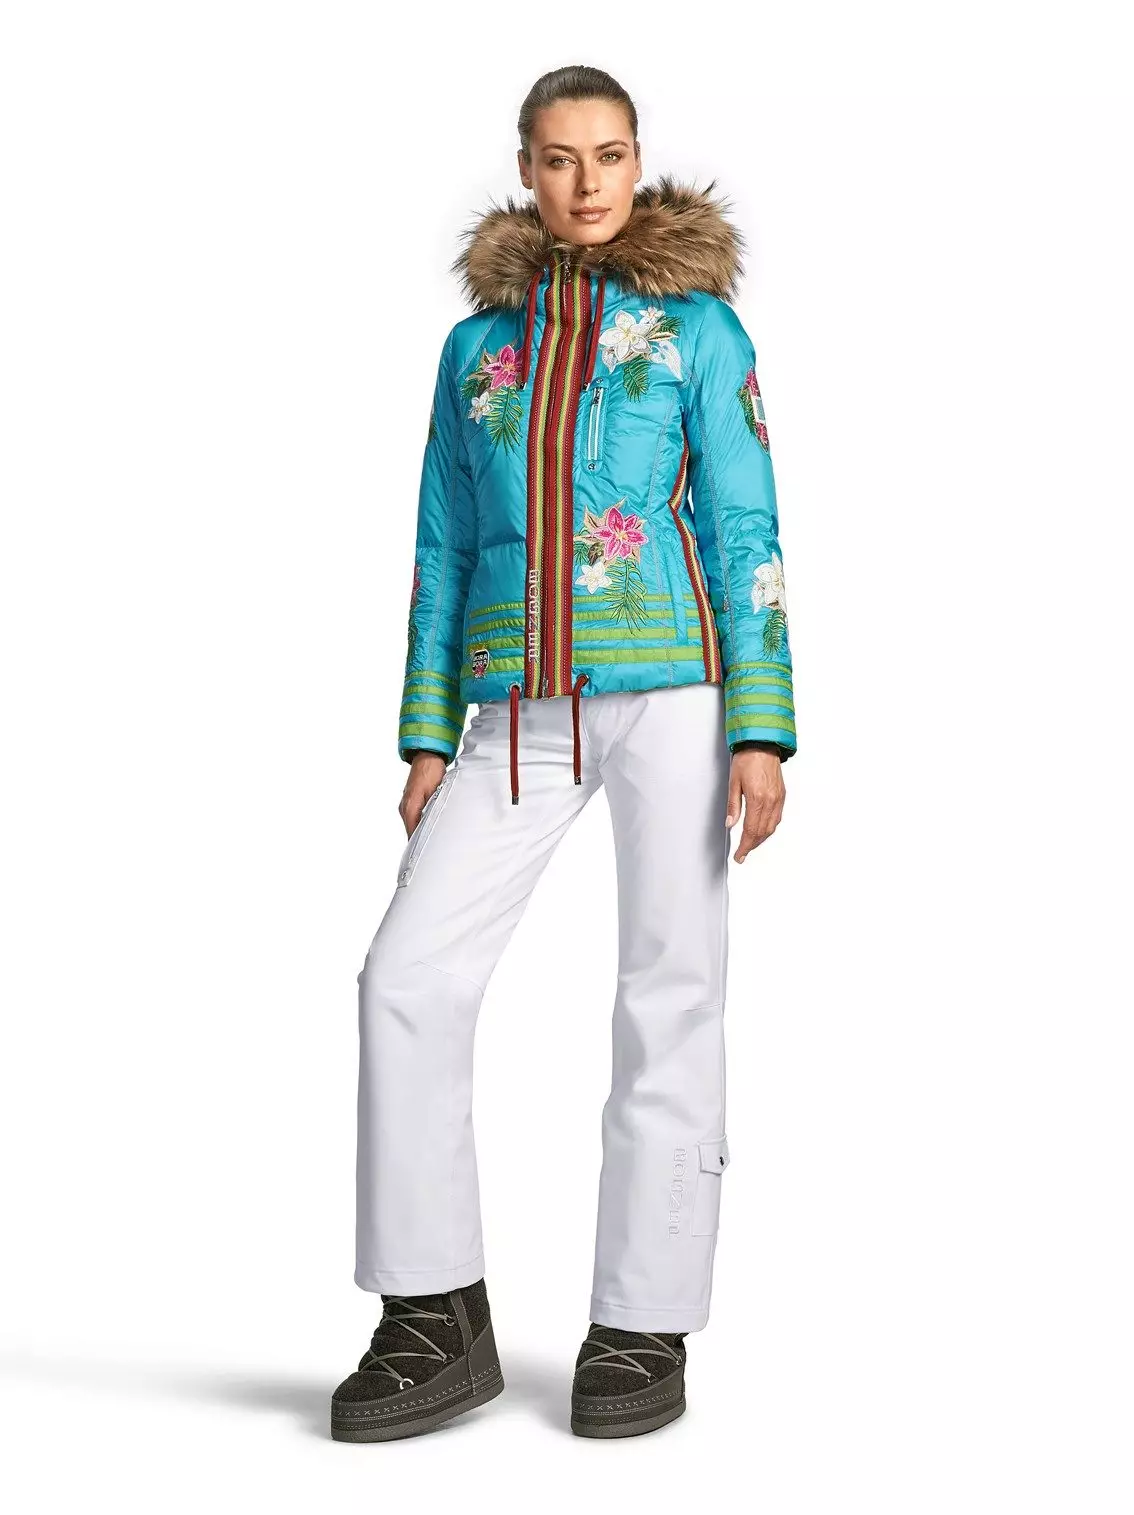 لباس های اسکی (90 عکس): مدل های اسکی زمستانی زنان، نحوه انتخاب 14837_56